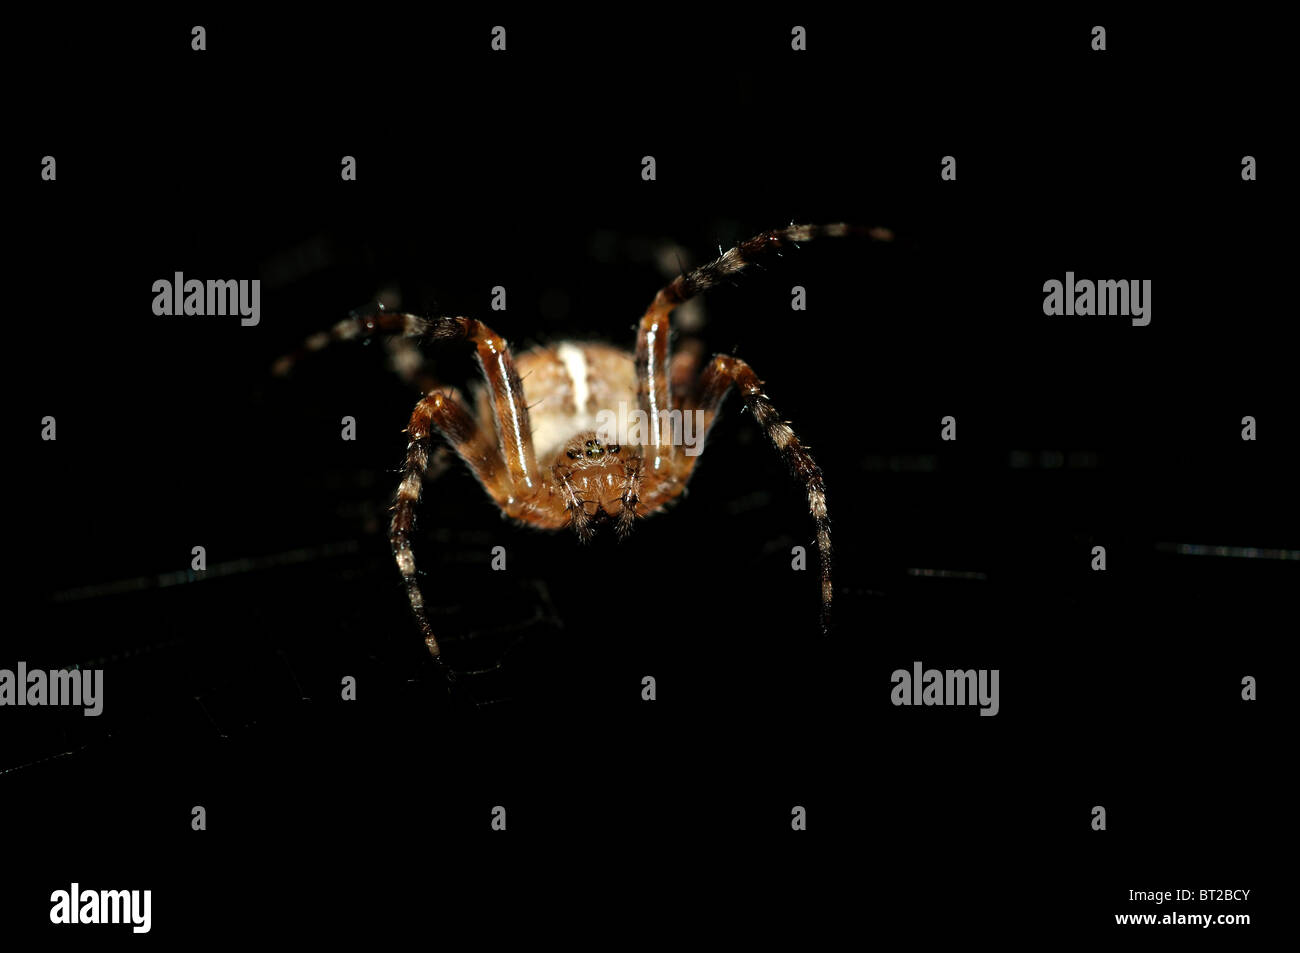 Croce Spider (Araneus diadematus) attaccare dal buio nero Foto Stock